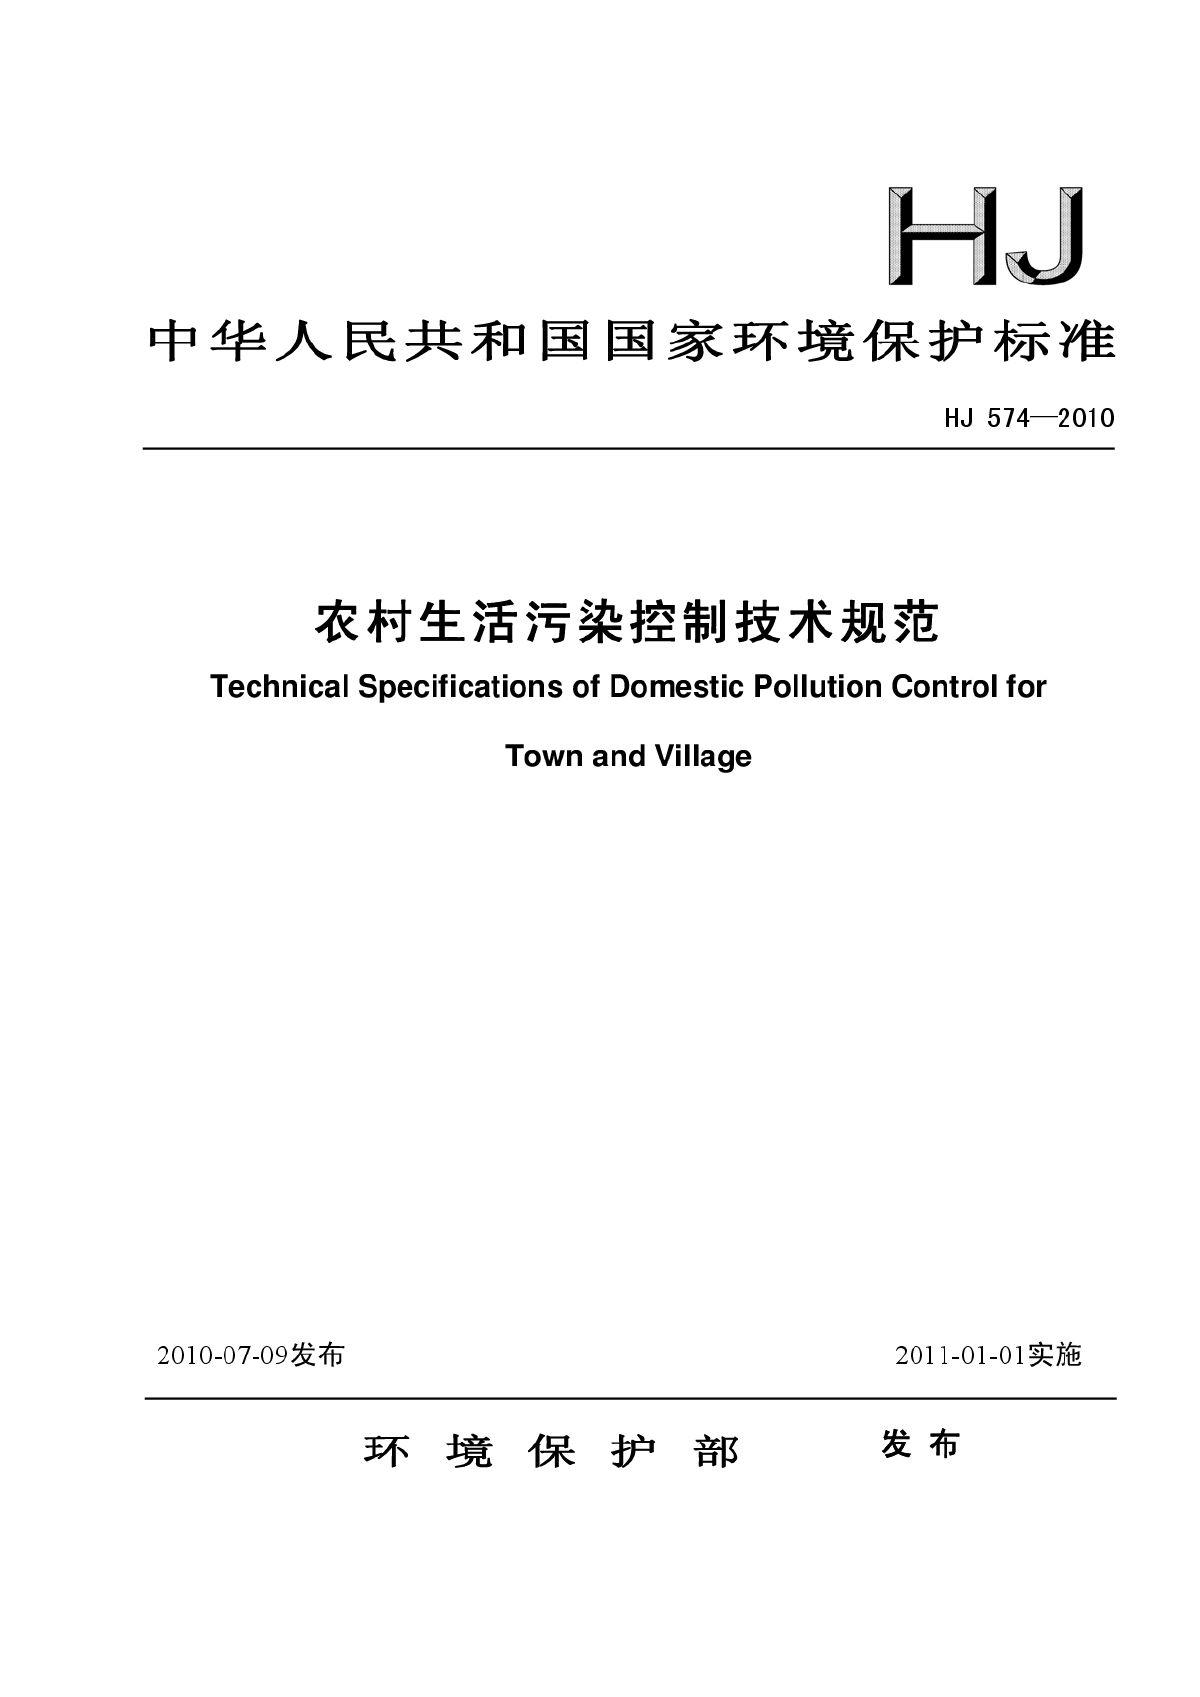 HJ 574-2010 农村生活污染控制技术规范